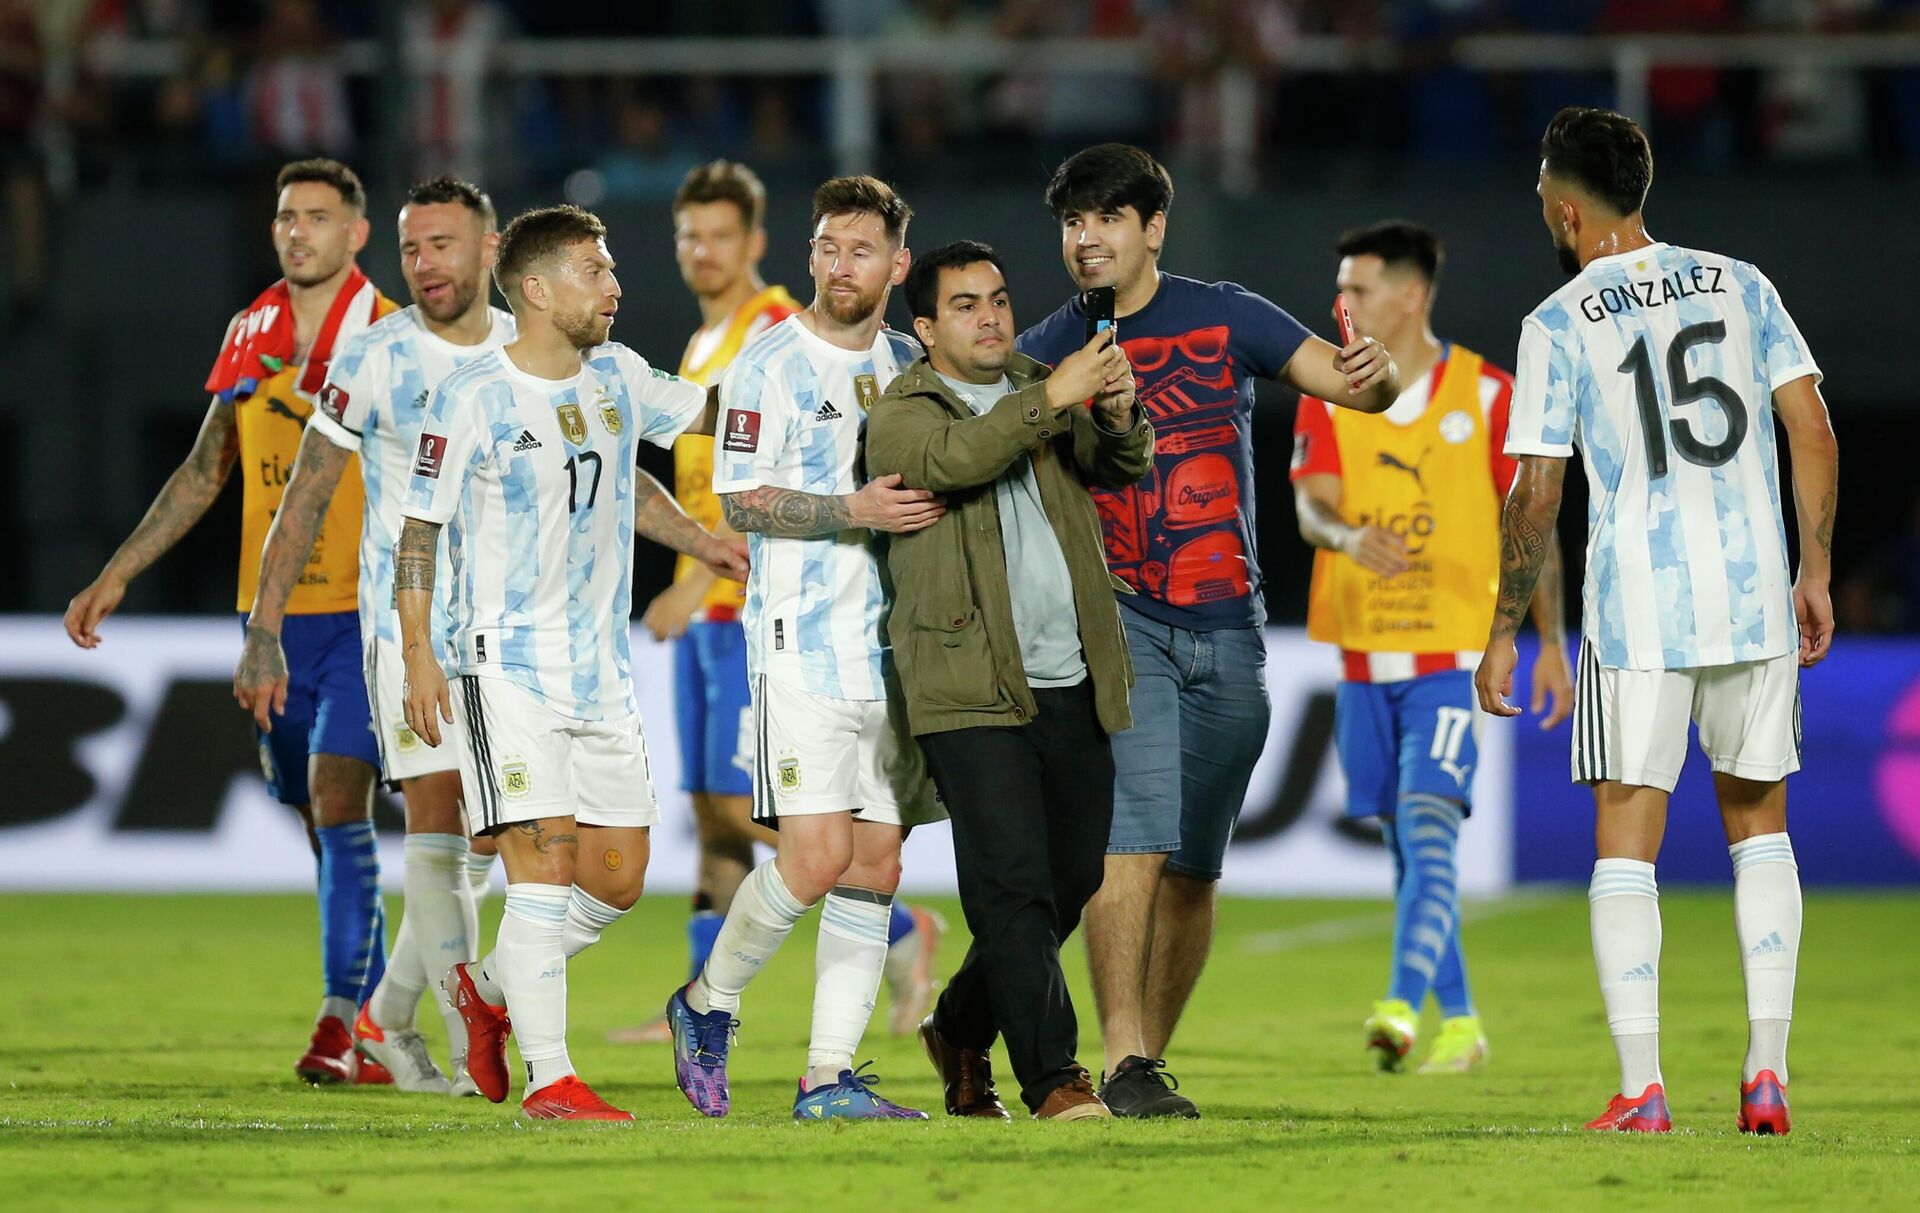 Un fanático intenta tomarse una fotografía con Lionel Messi luego del partido entre Paraguay y Argentina en Asunción - Sputnik Mundo, 1920, 08.10.2021